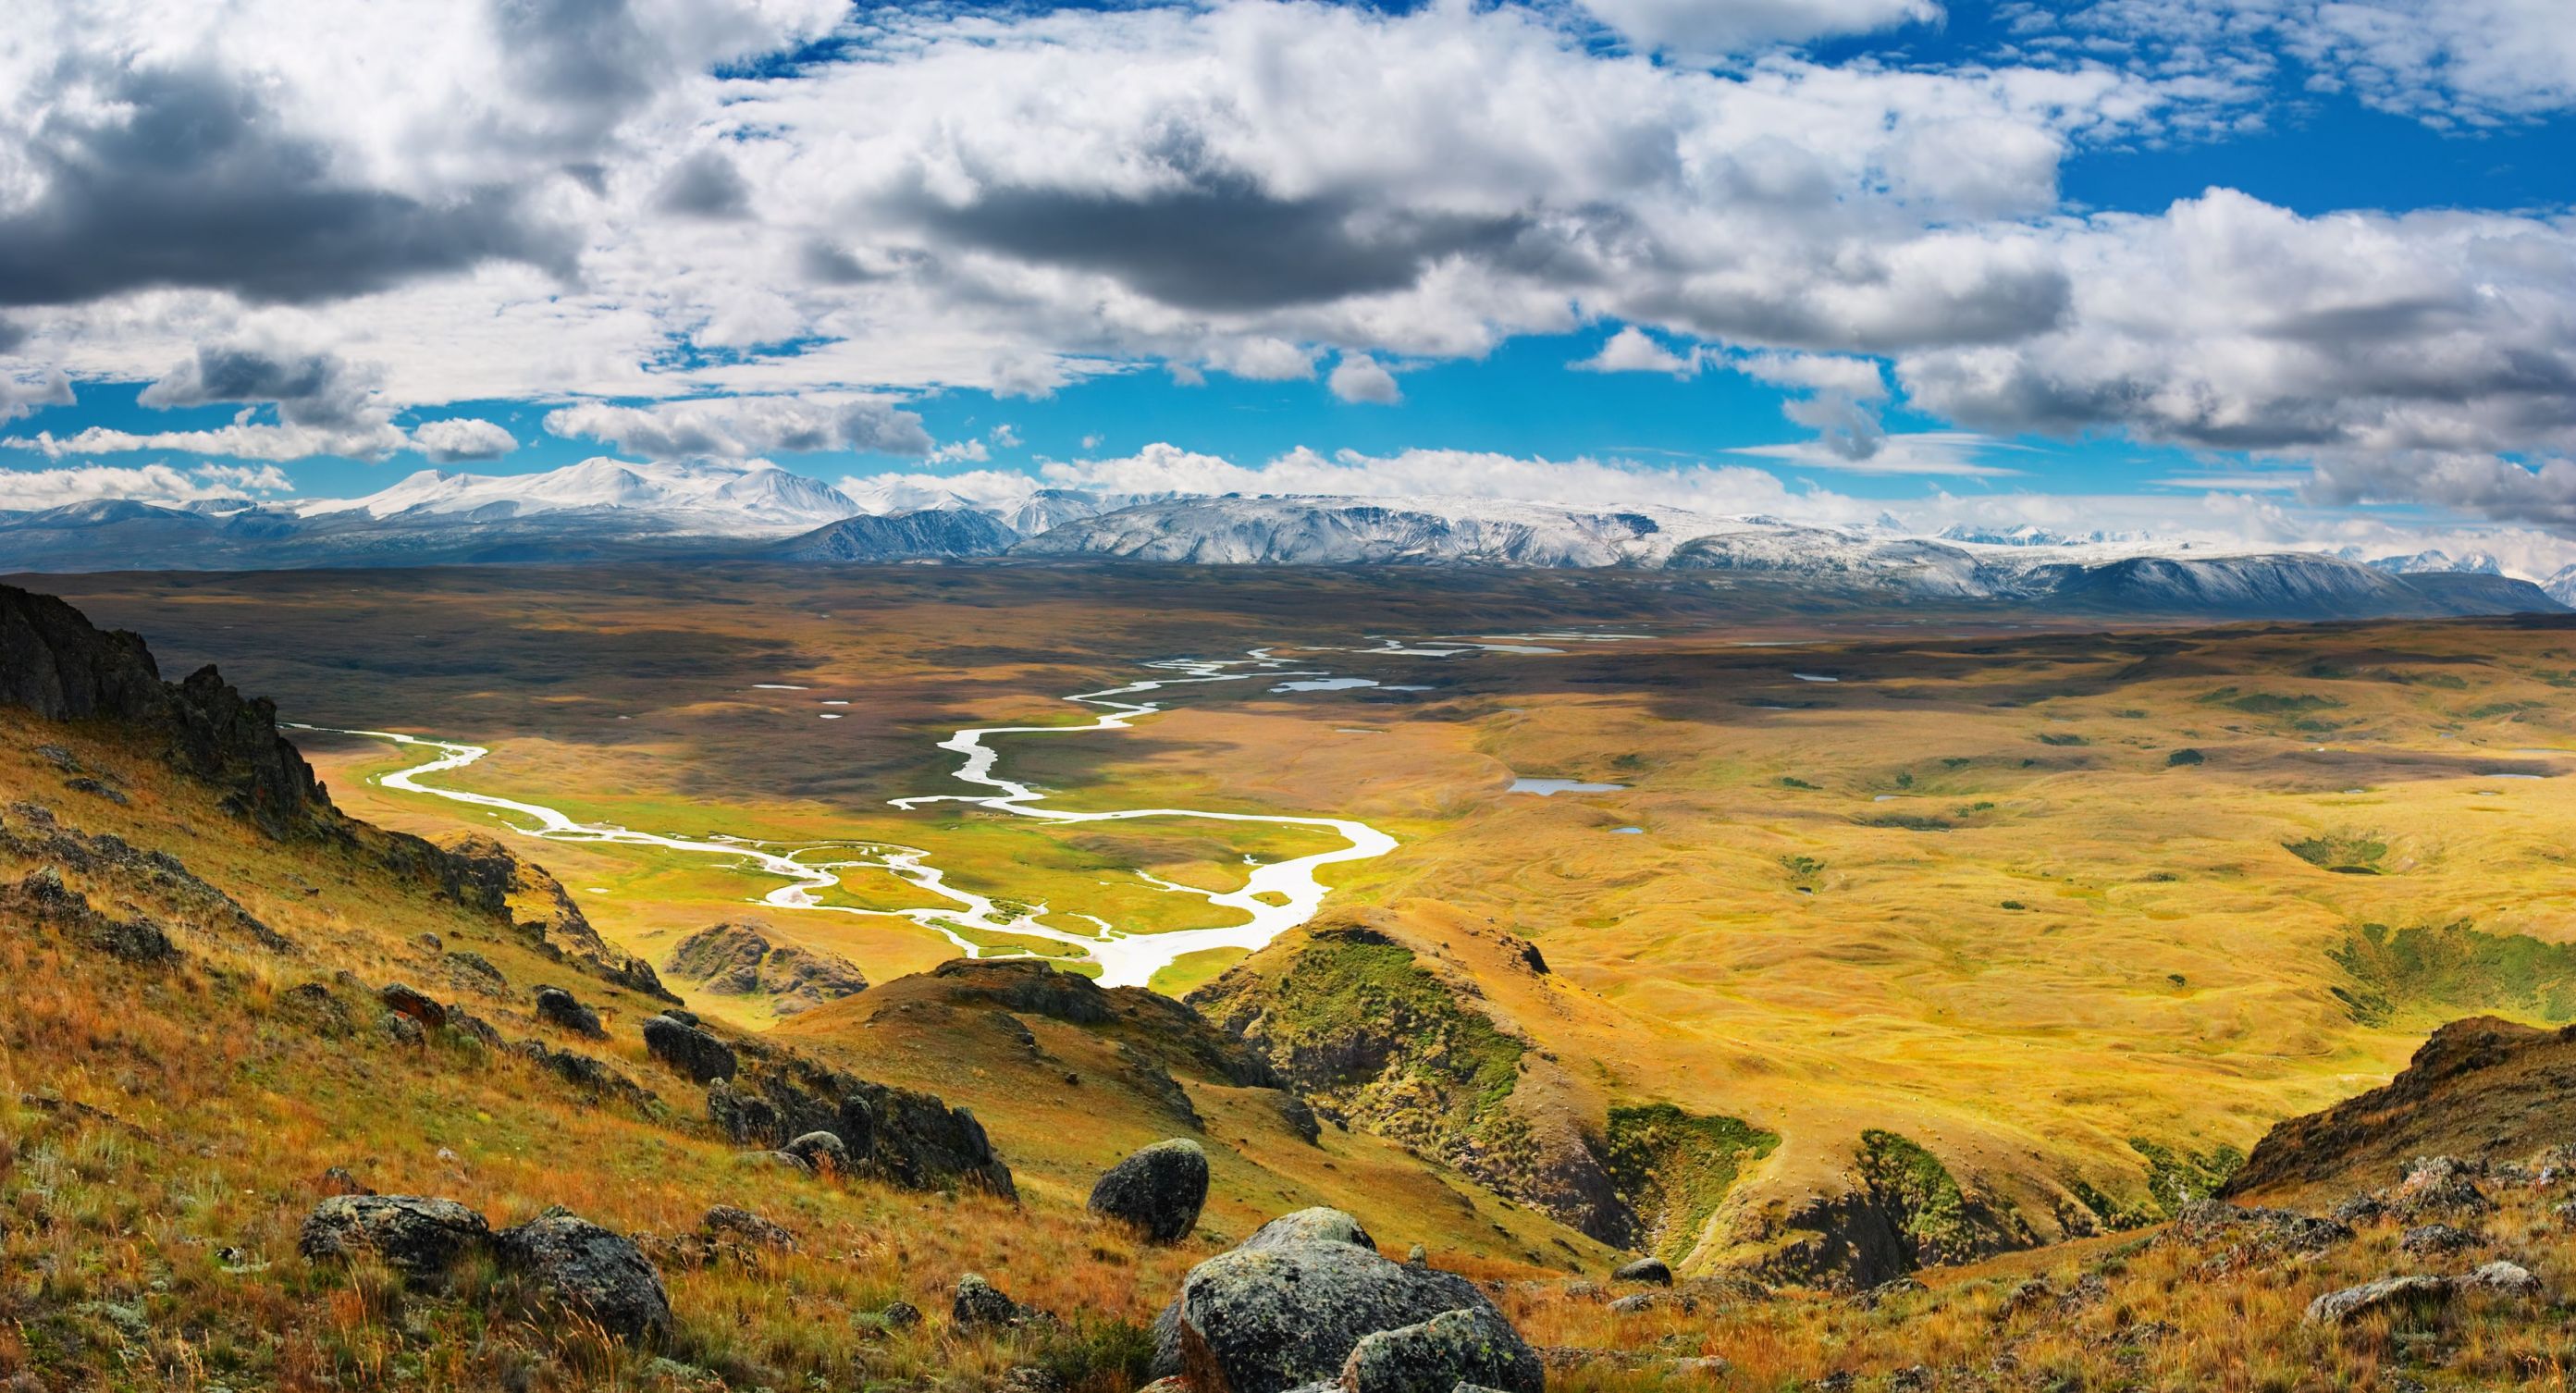 Ukok plateau, Mongolia